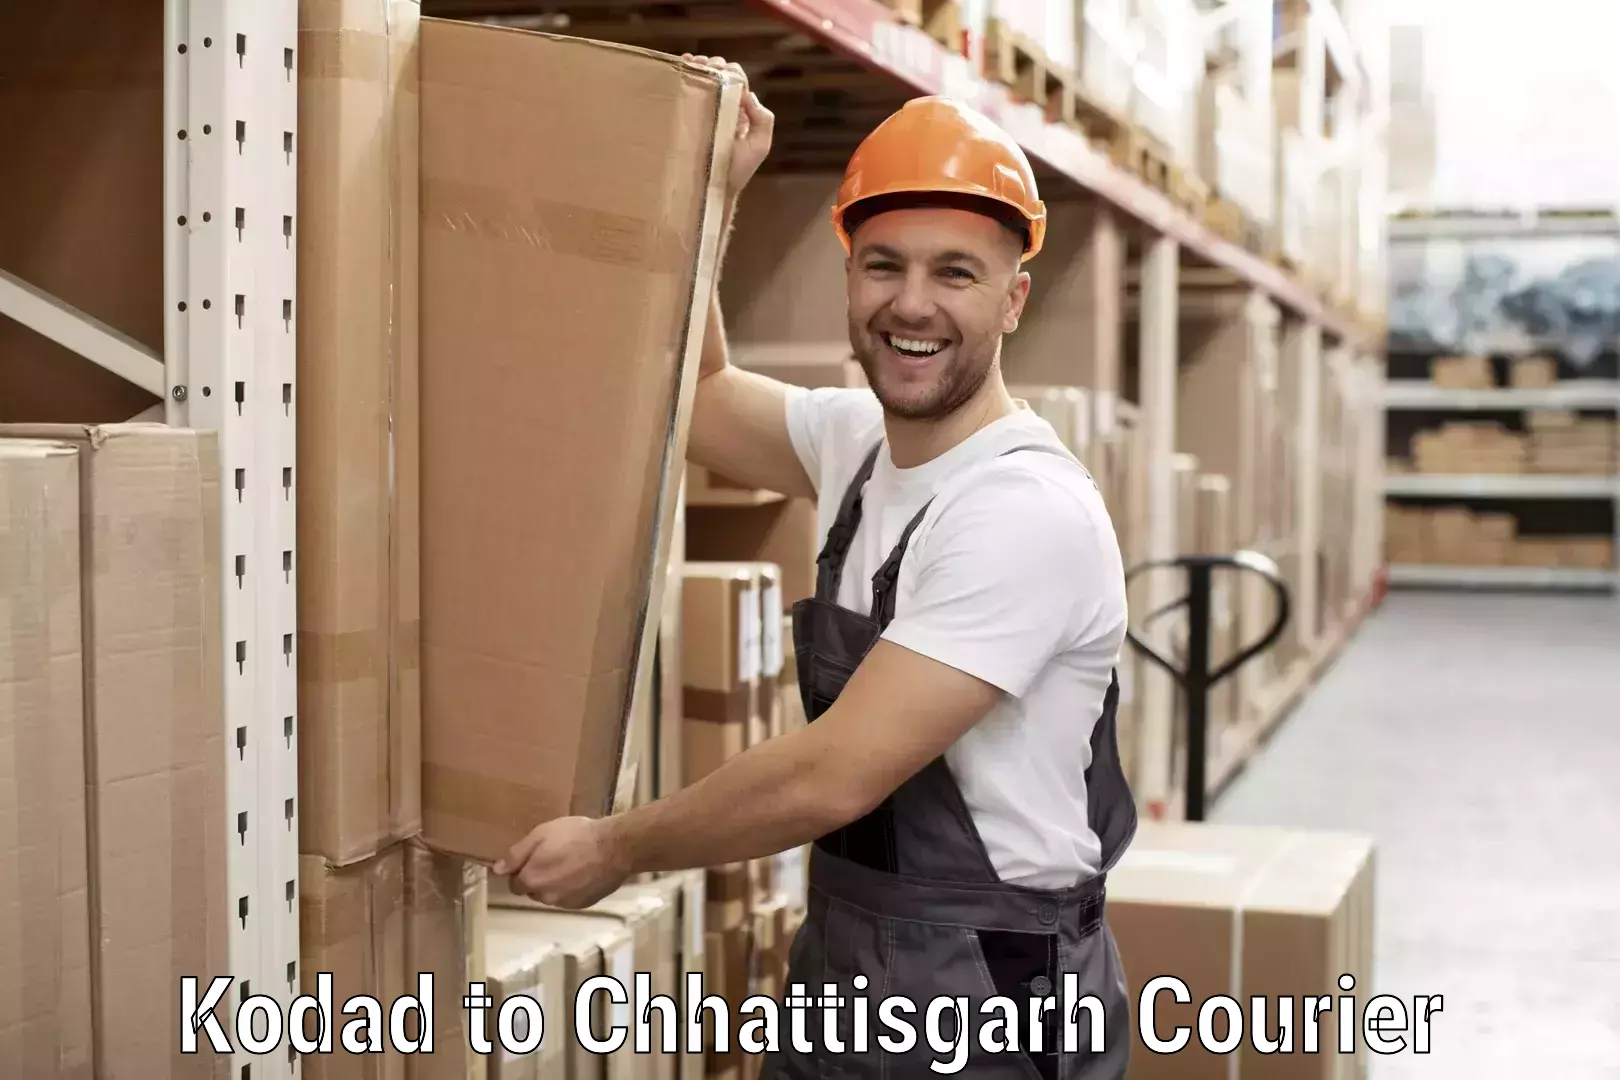 Courier service comparison Kodad to Patna Chhattisgarh